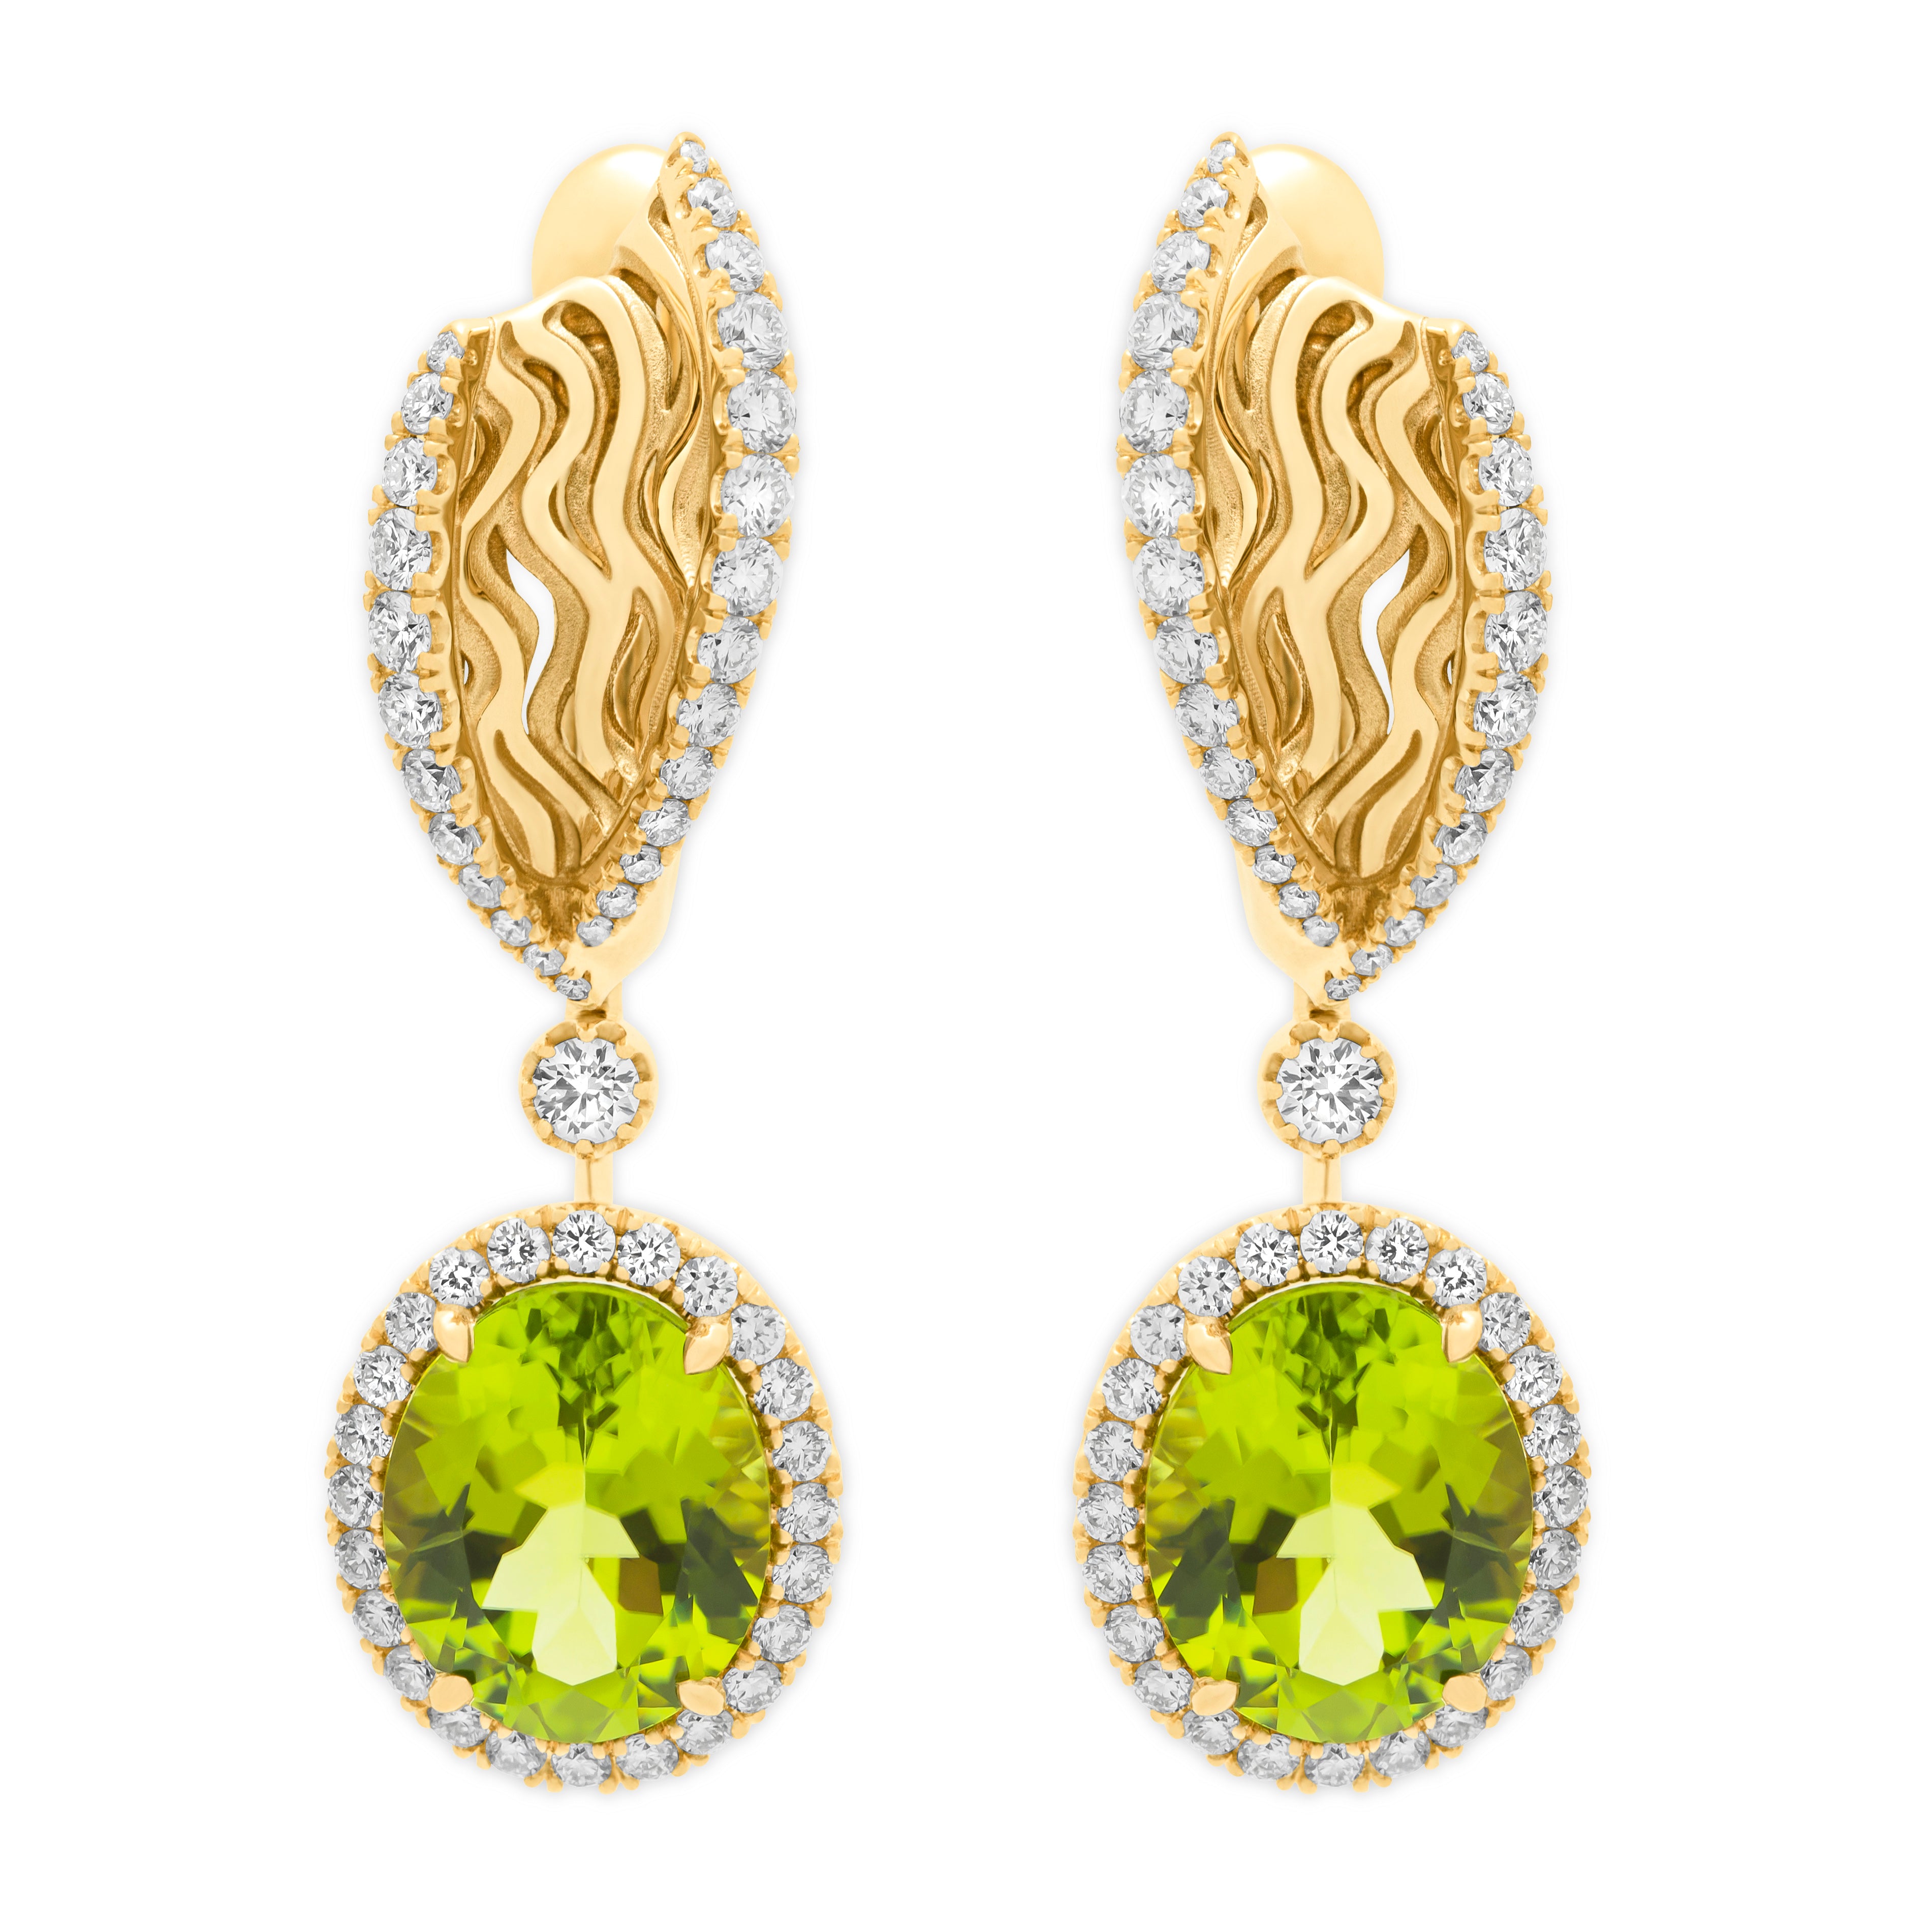 E 0144-02, 18K Yellow Gold, Peridot, Diamonds Earrings